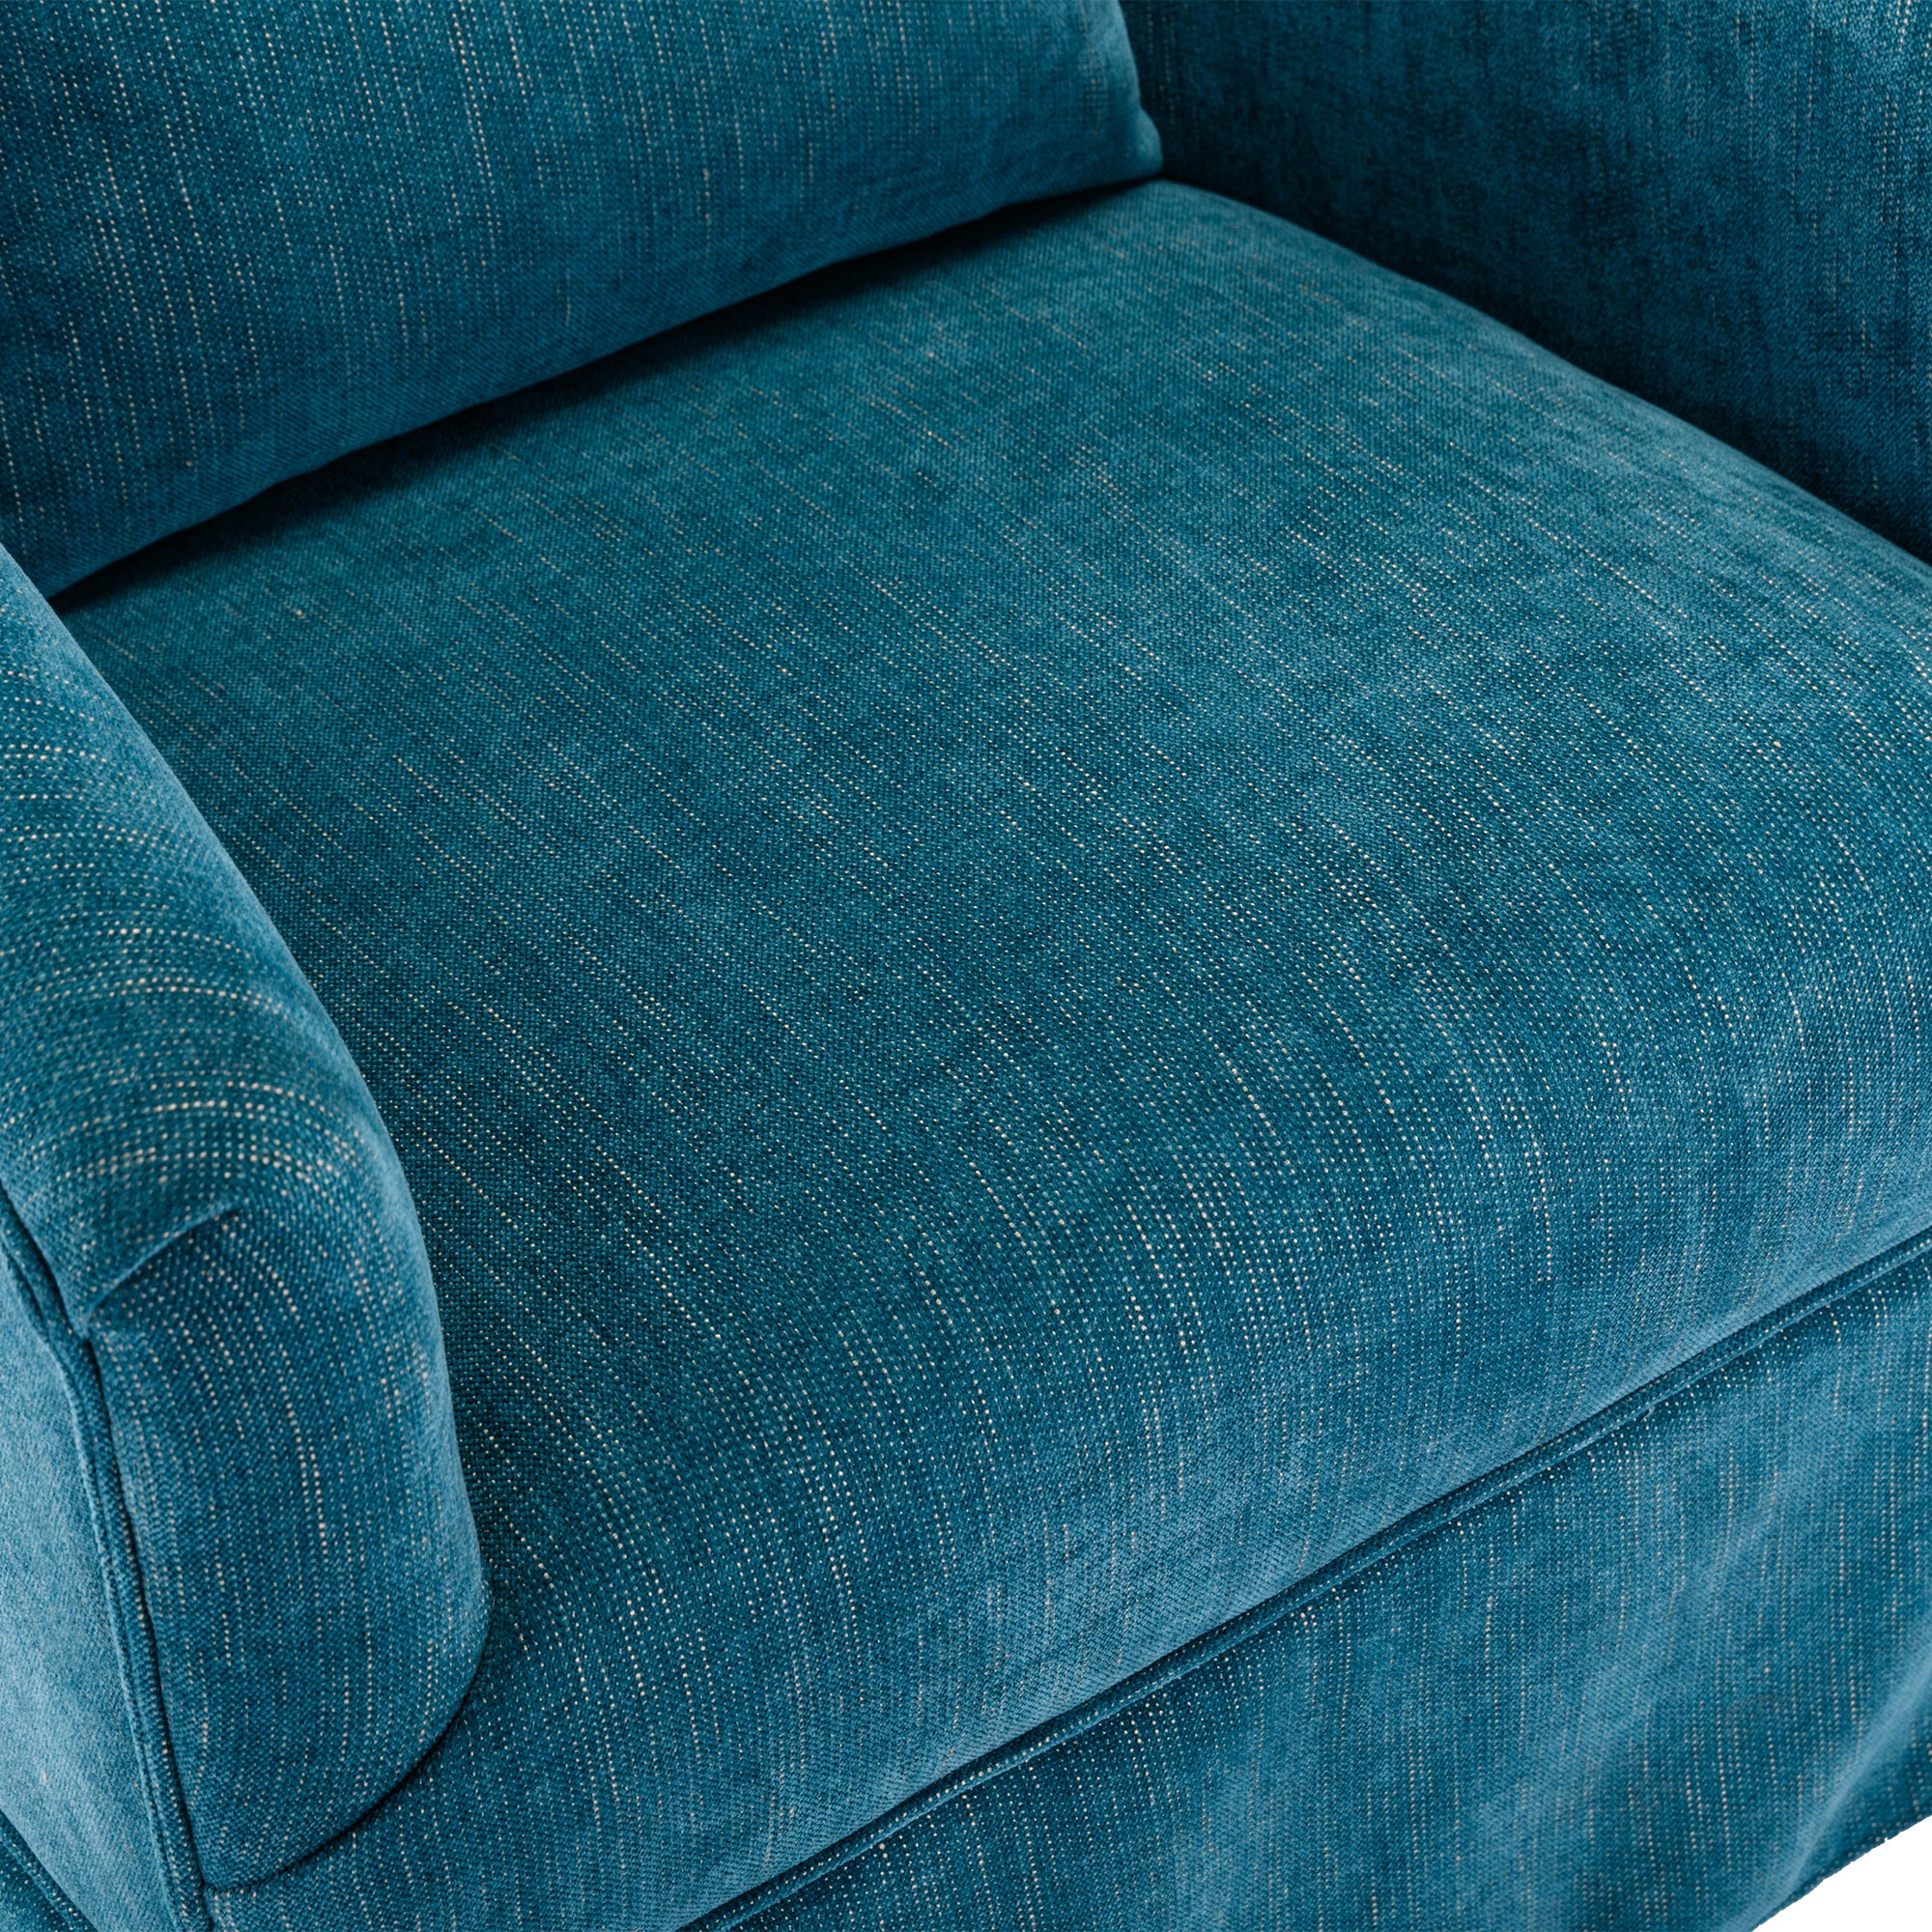 360 degree Swivel Accent Armchair Linen Blend Green green-foam-upholstered